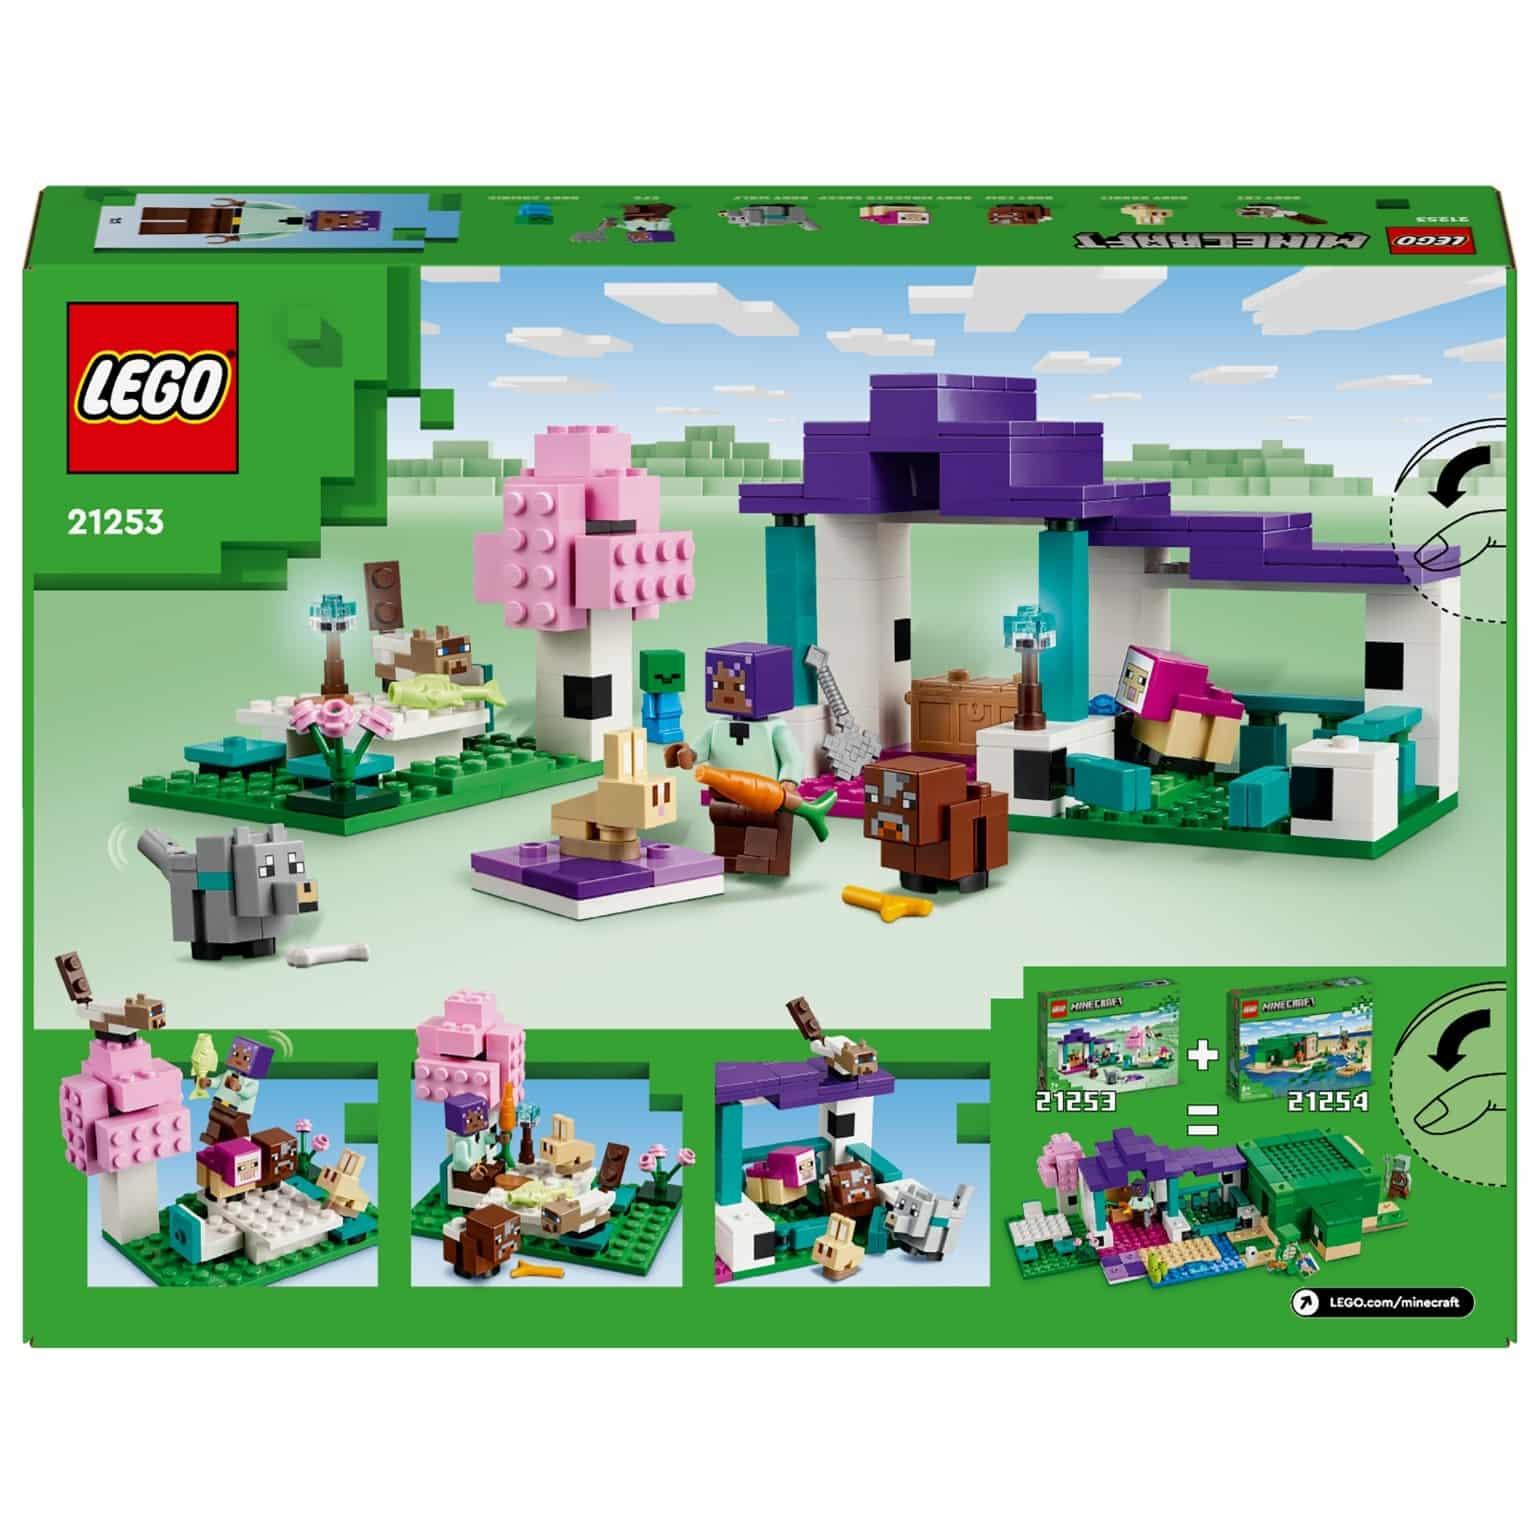 Lego Minecraft - O Santuário dos Animais - Brincatoys